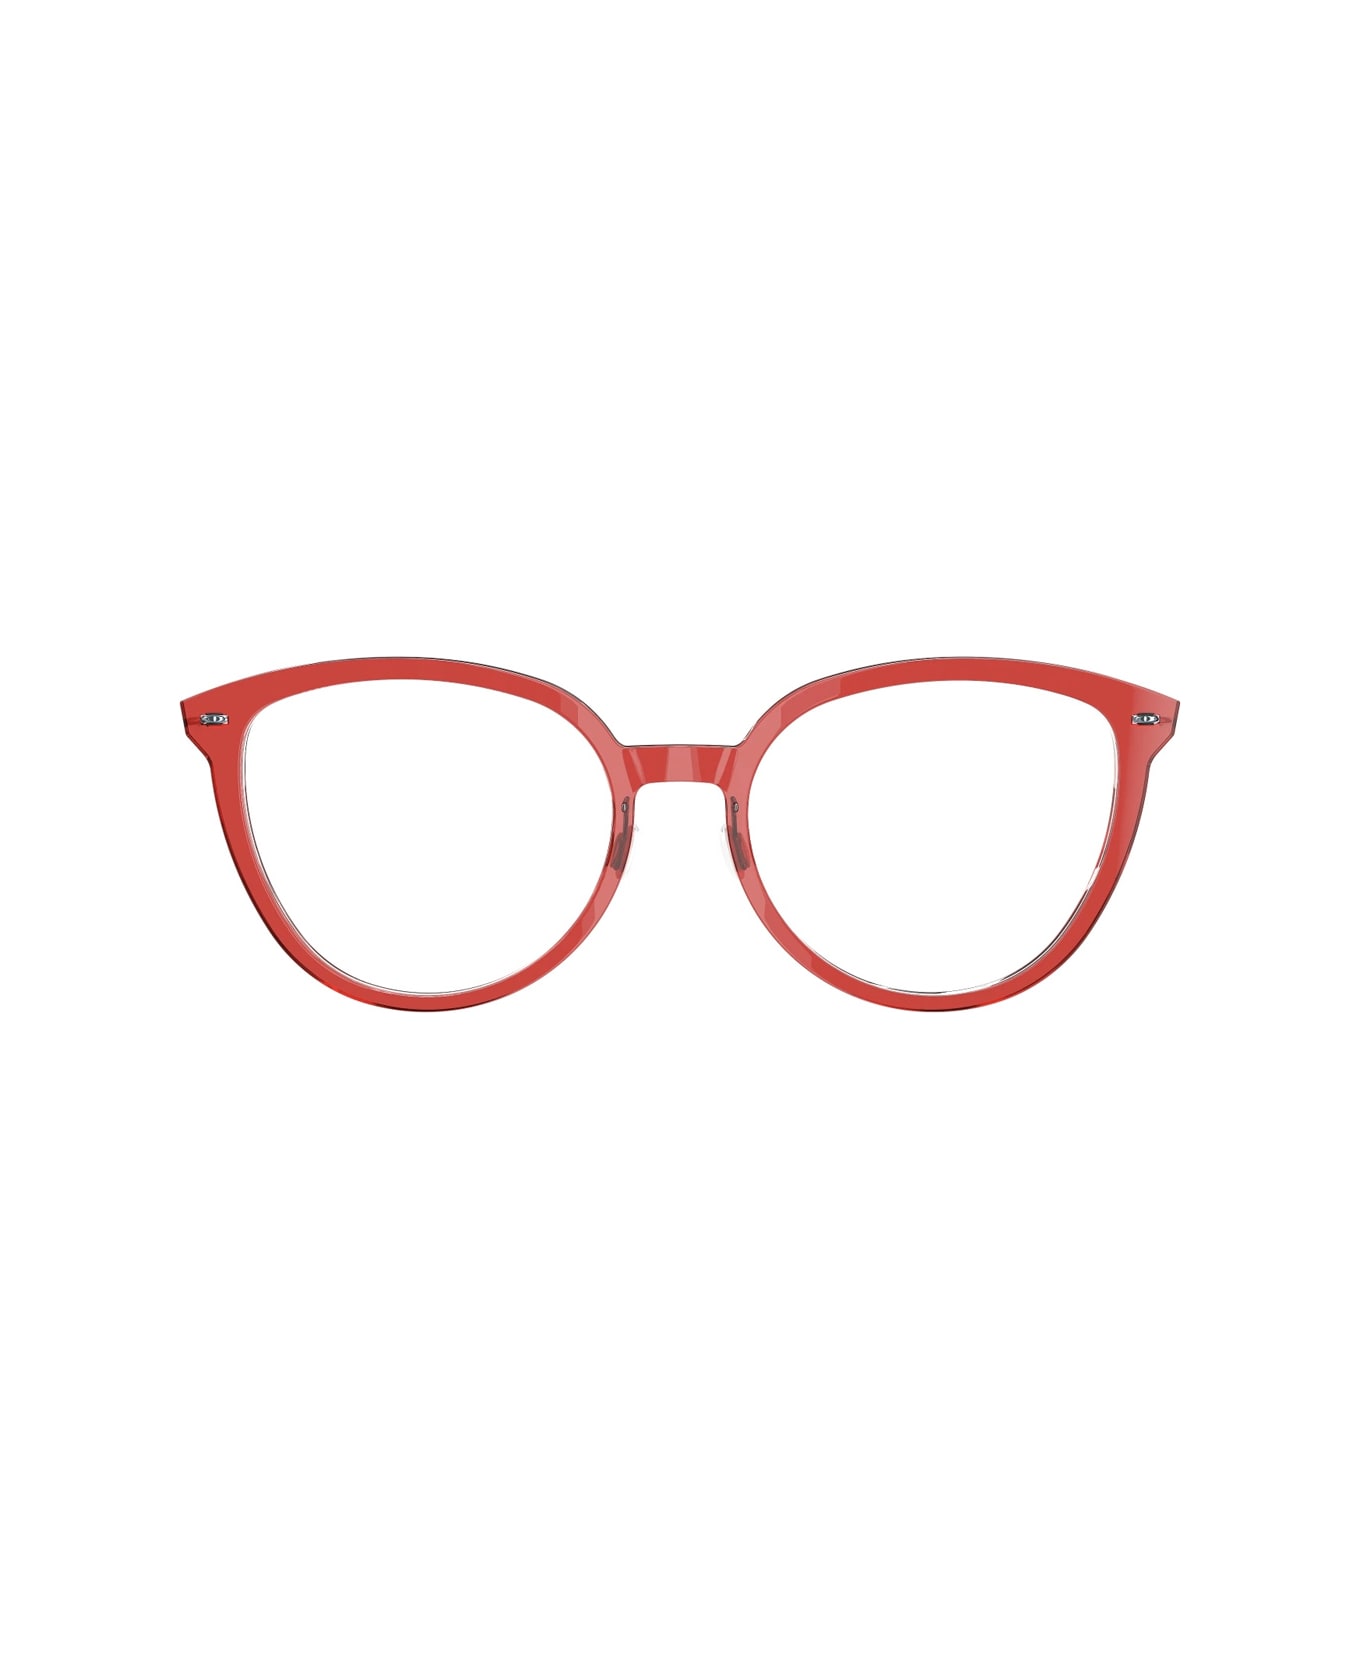 LINDBERG N.o.w. 6618 C18m - P25 Glasses - Rosso アイウェア